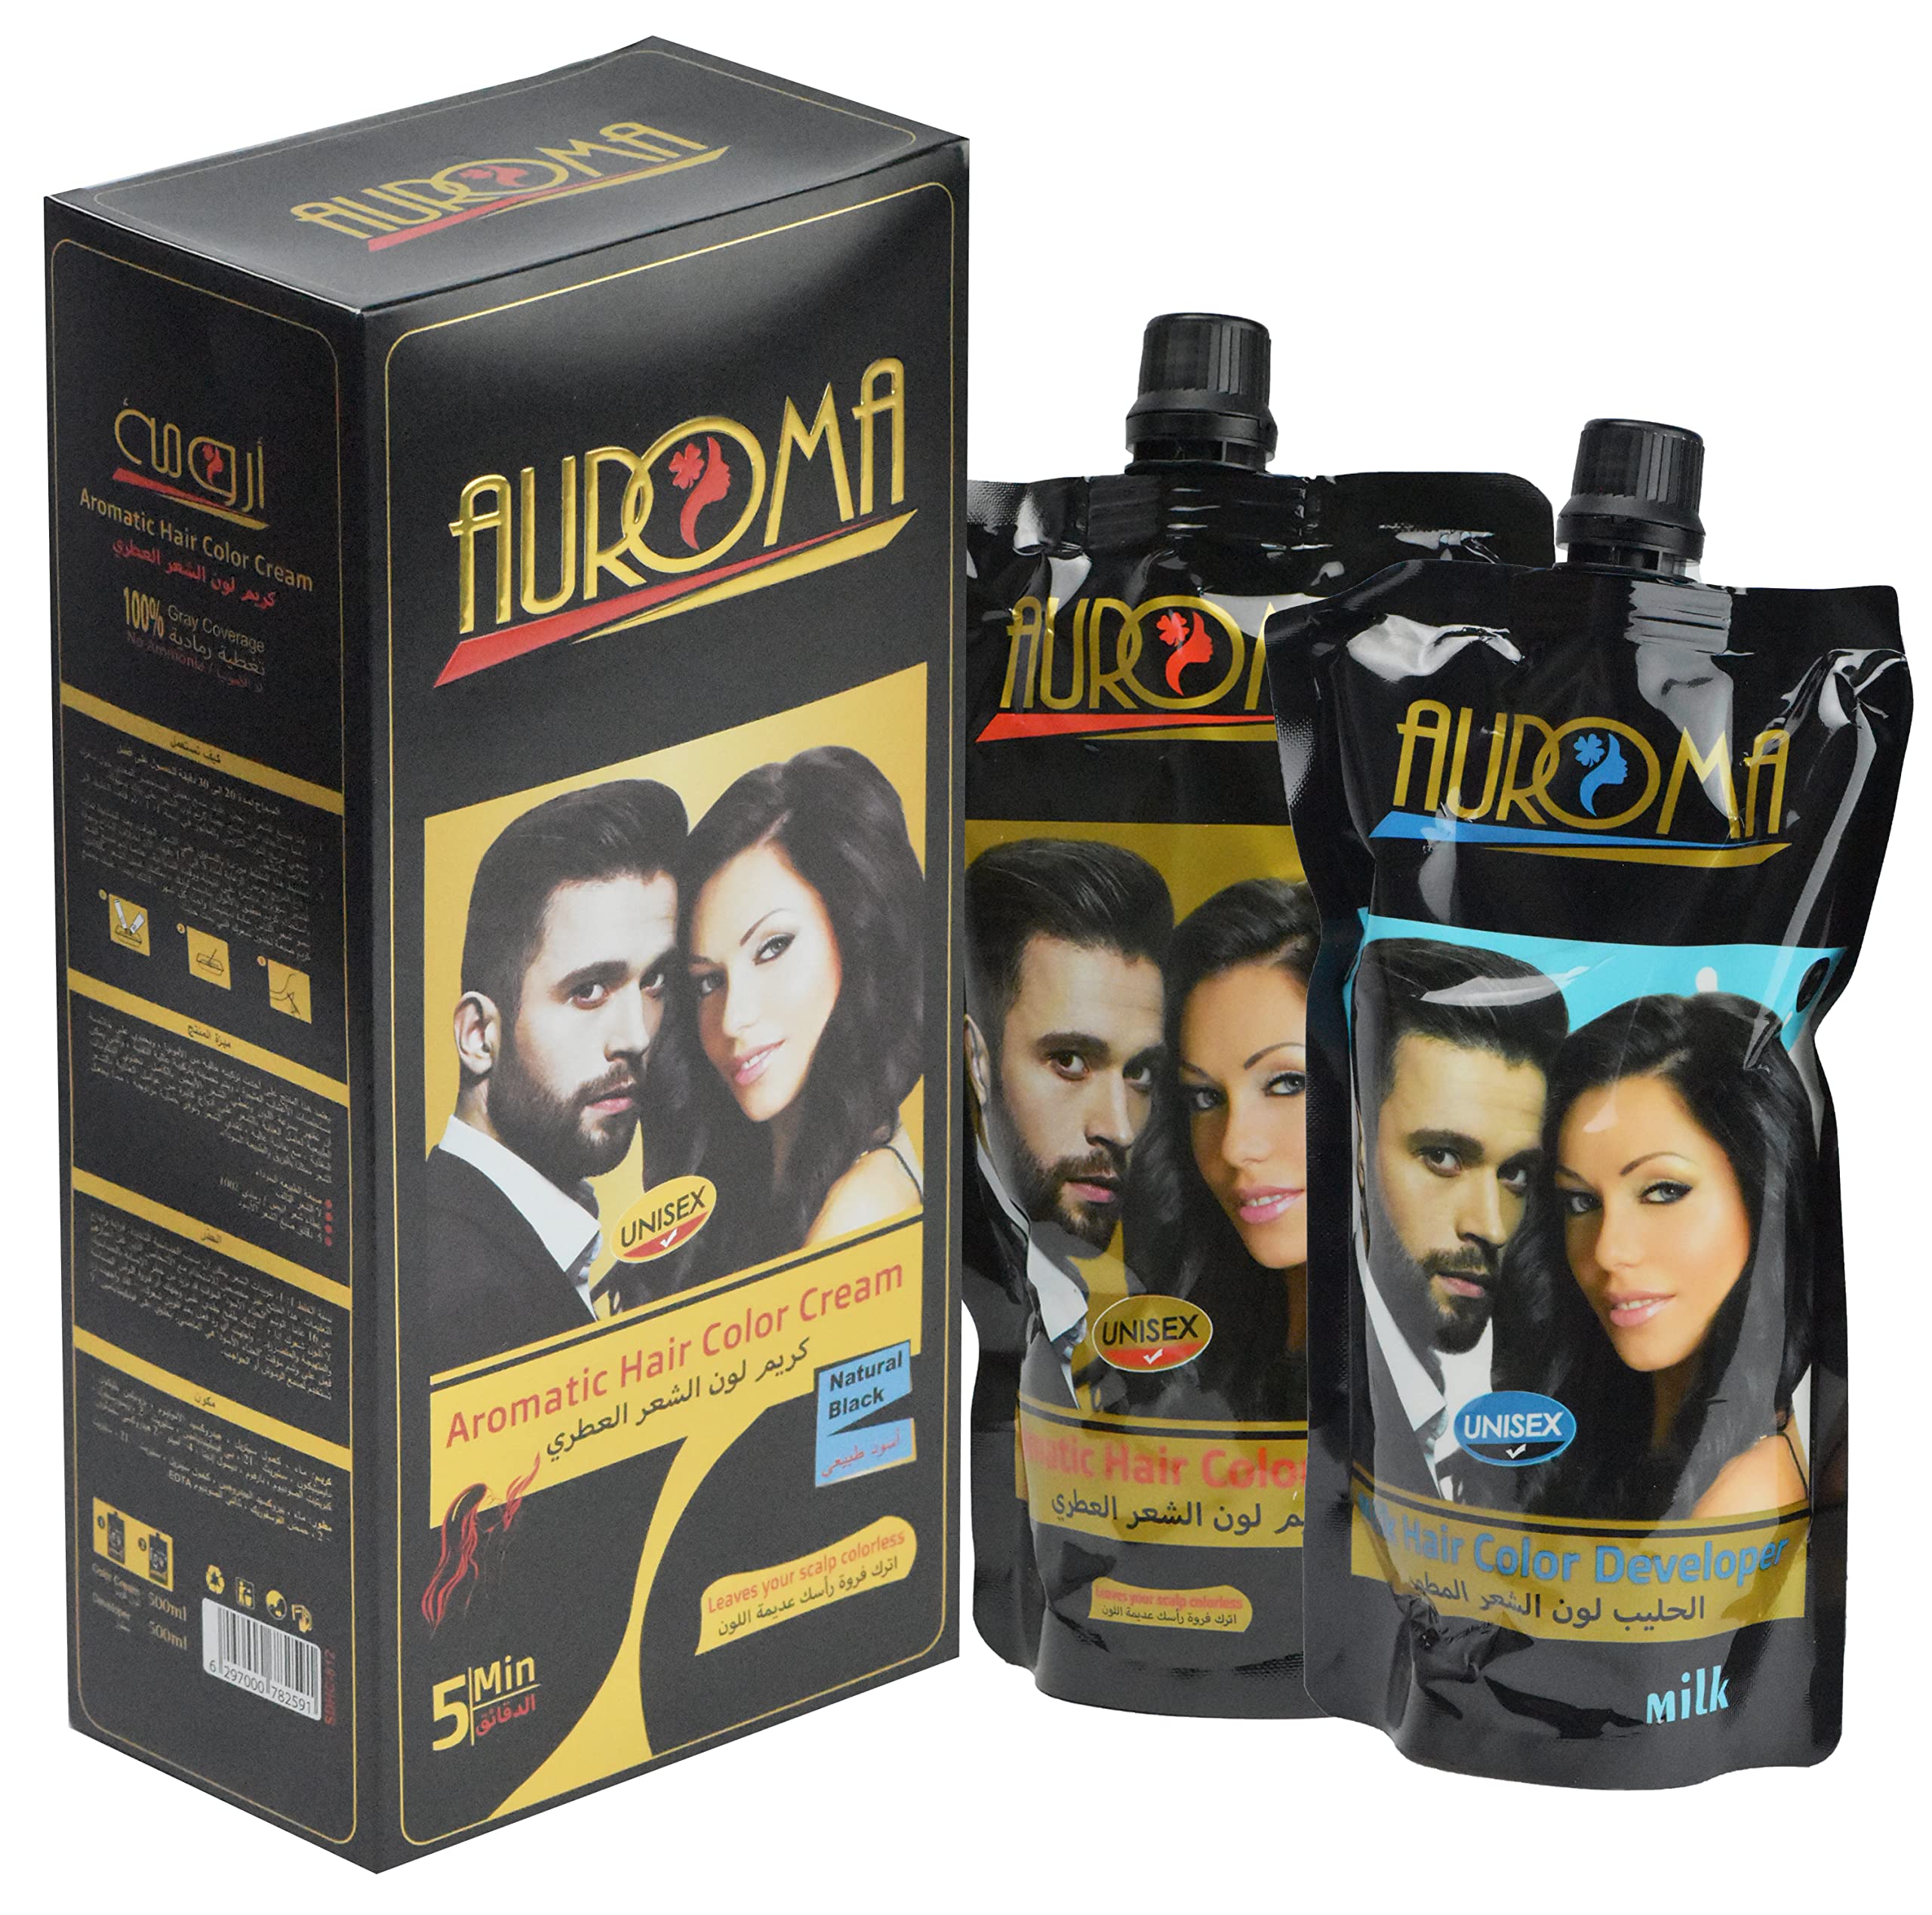 Auroma Hair Color Cream, Aromatic Hair Dye, Natural Balck hair color (500ml +500ml)